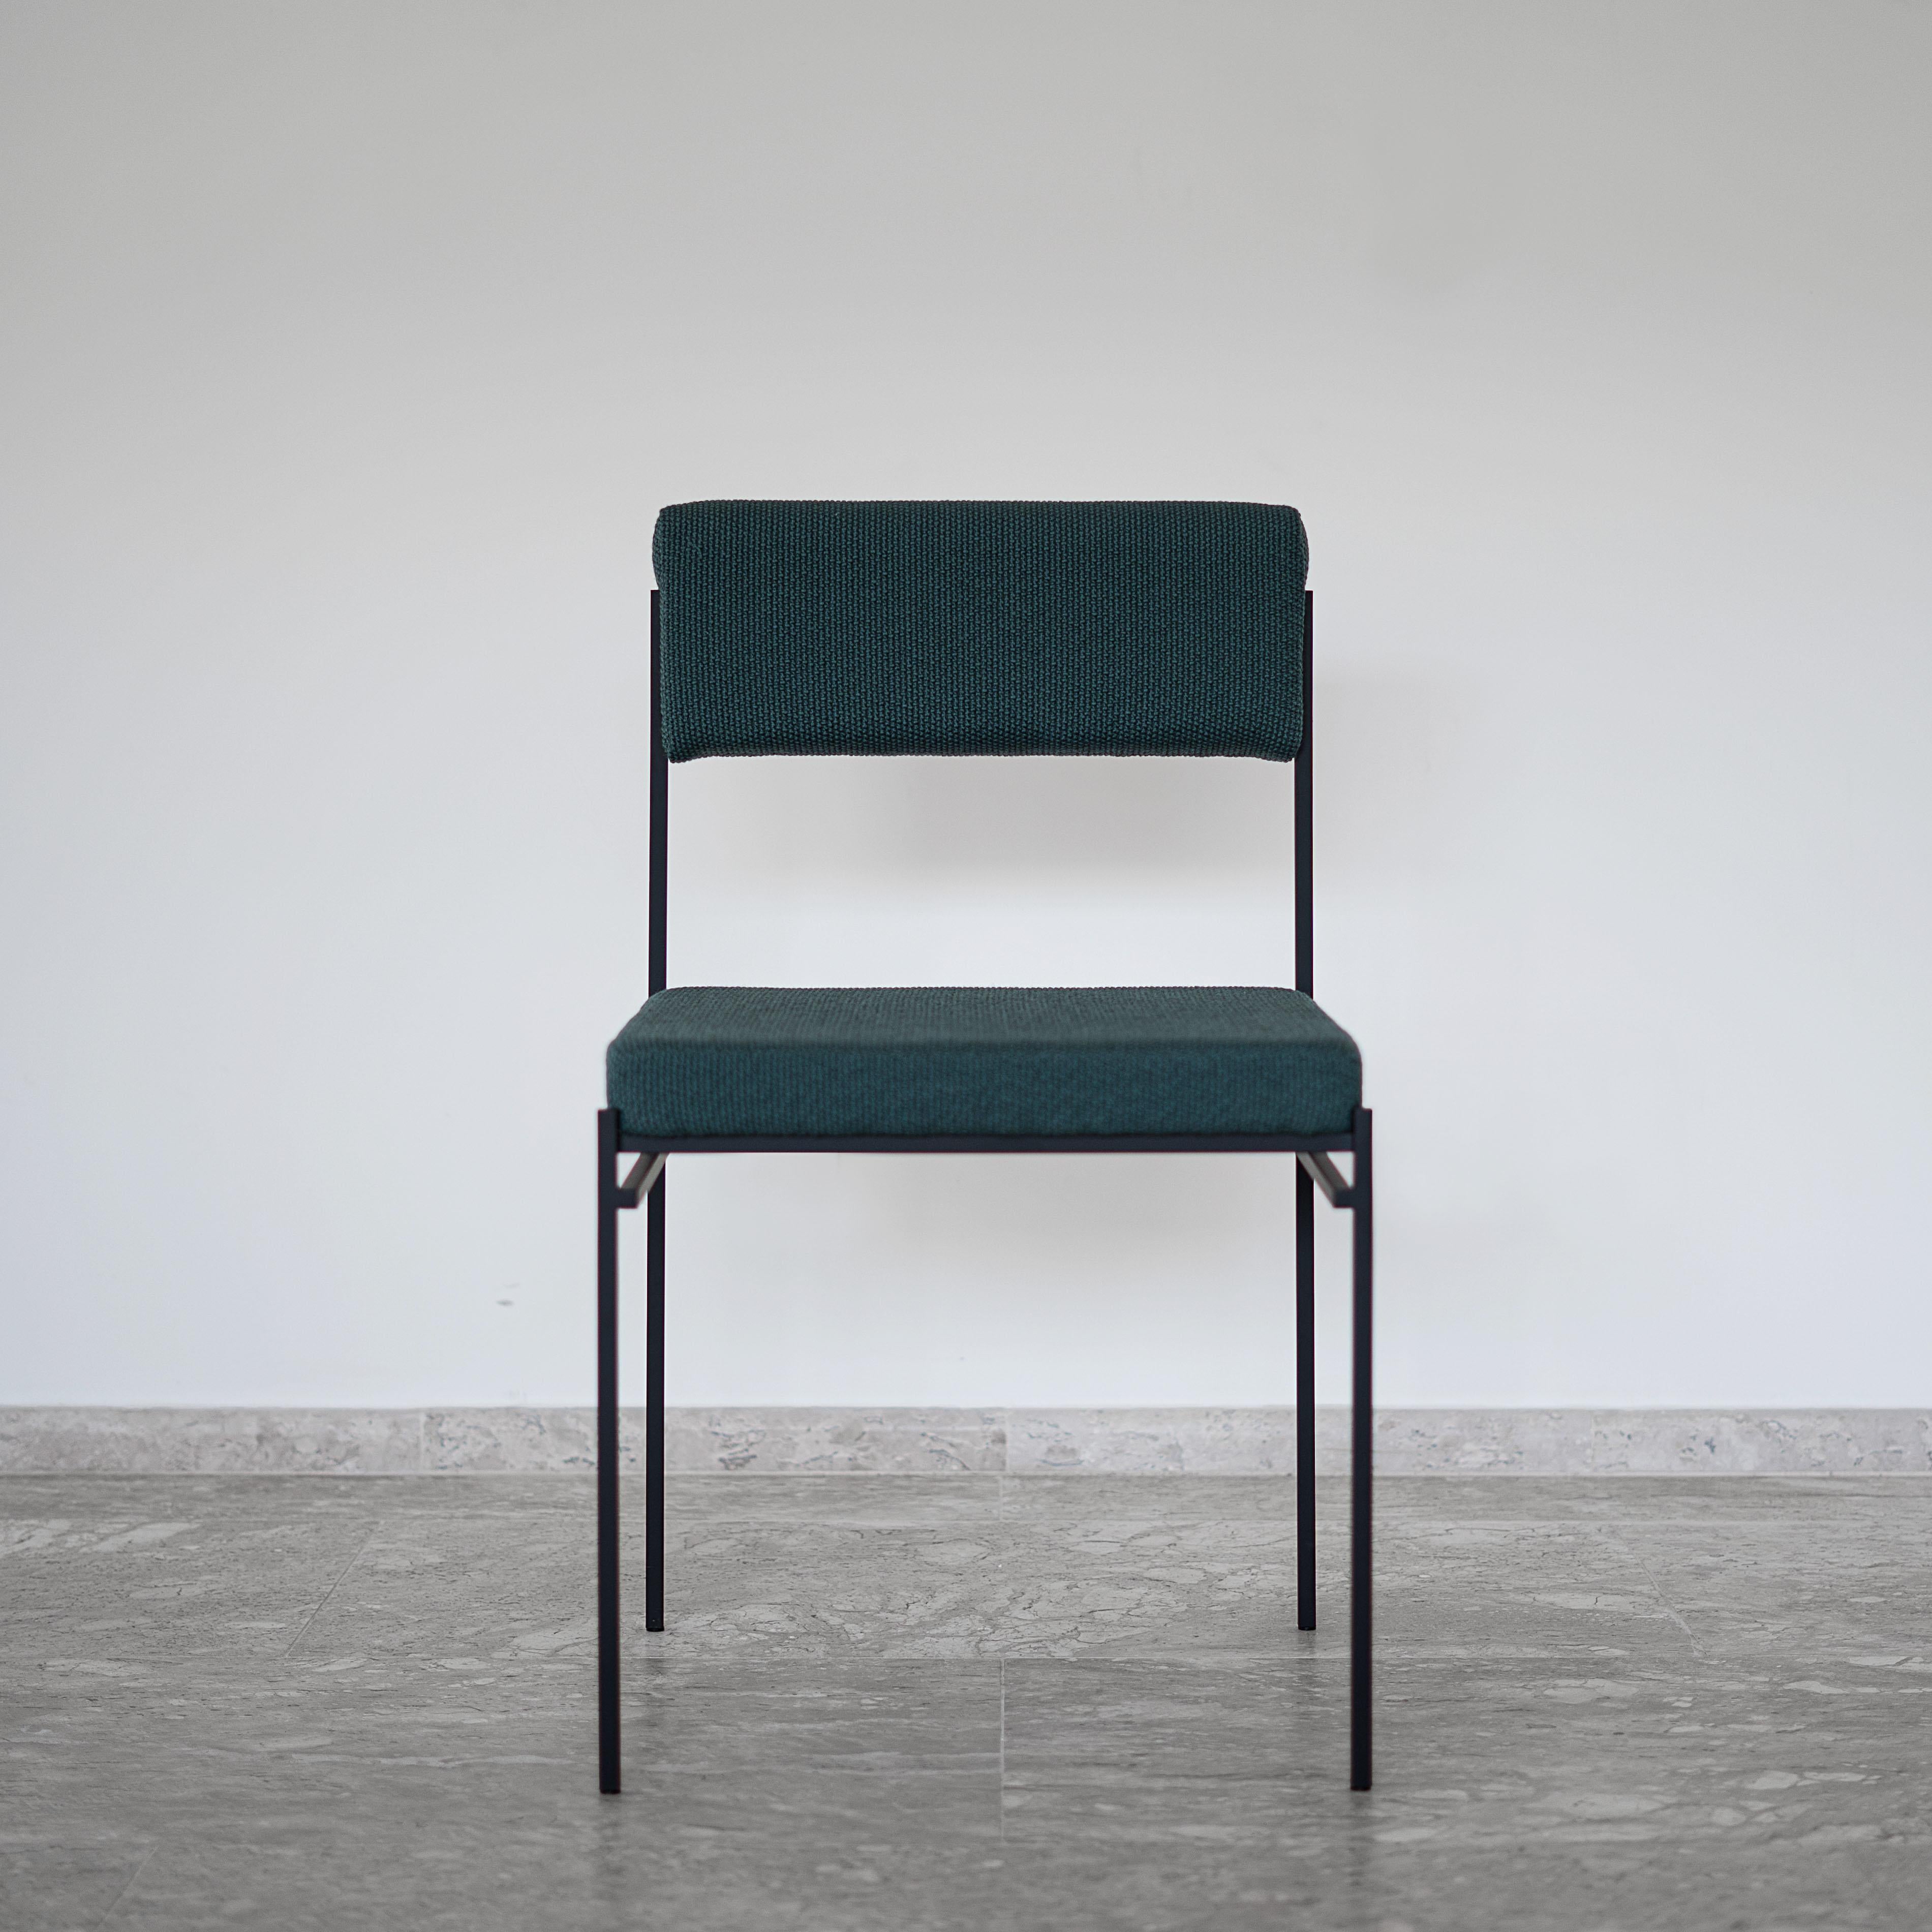 Ce fauteuil contemporain s'inspire du design moderne brésilien. Avec un ADN carré, l'objectif est de créer une chaise géométrique et essentielle. Tous les éléments structurels constituent son fonctionnement et sont dimensionnés pour assurer une